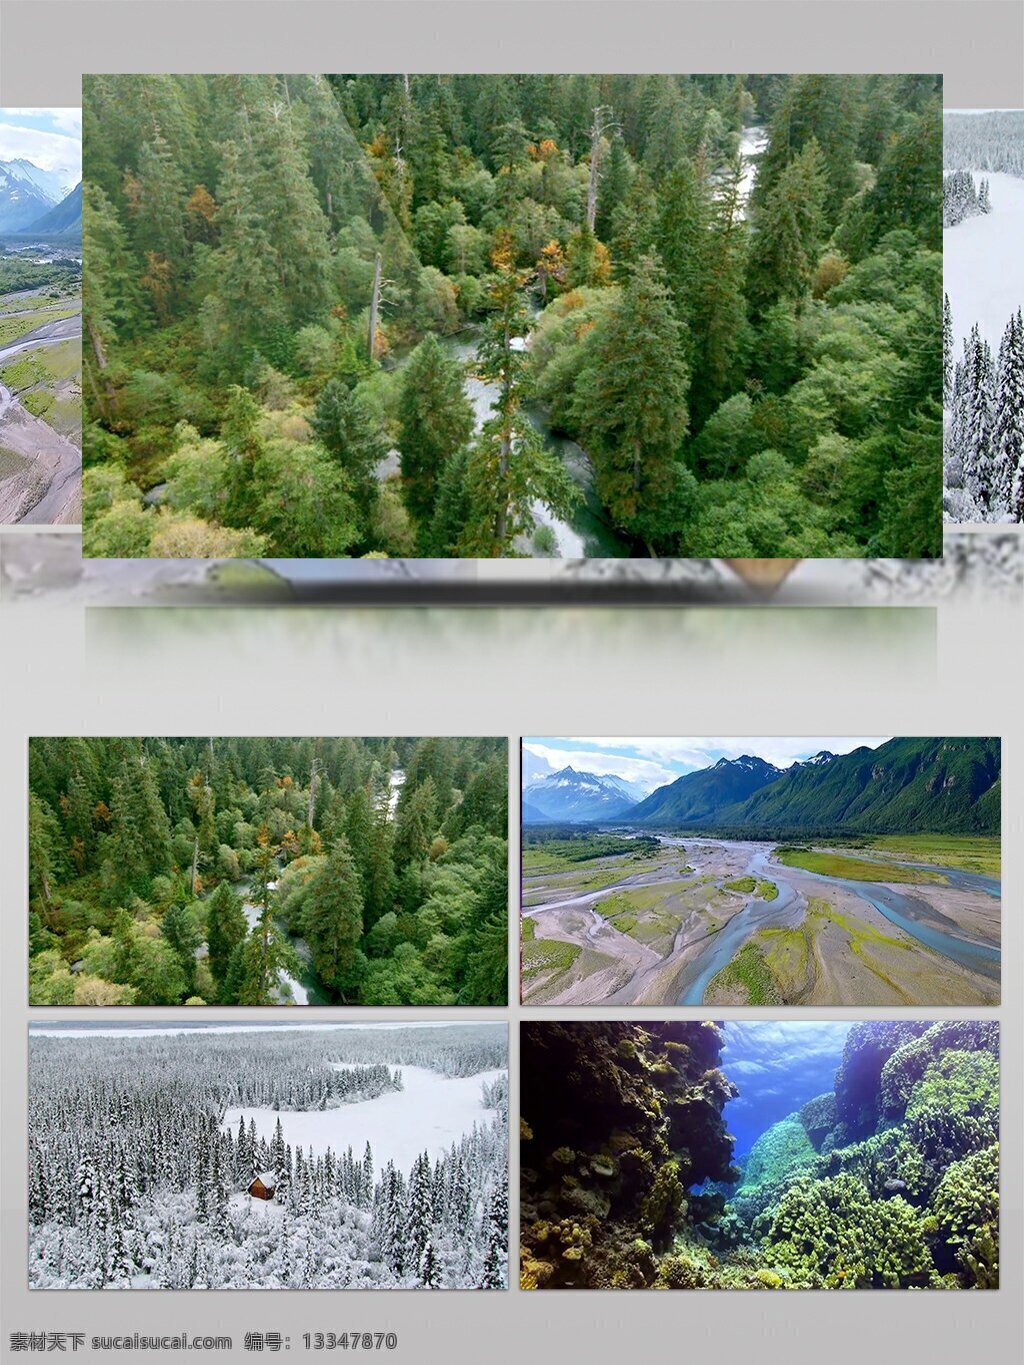 实拍 自然 雪景 美景 公益 宣传片 自然美景 保护环境 大自然 说话 公益片 树林 河流 小草